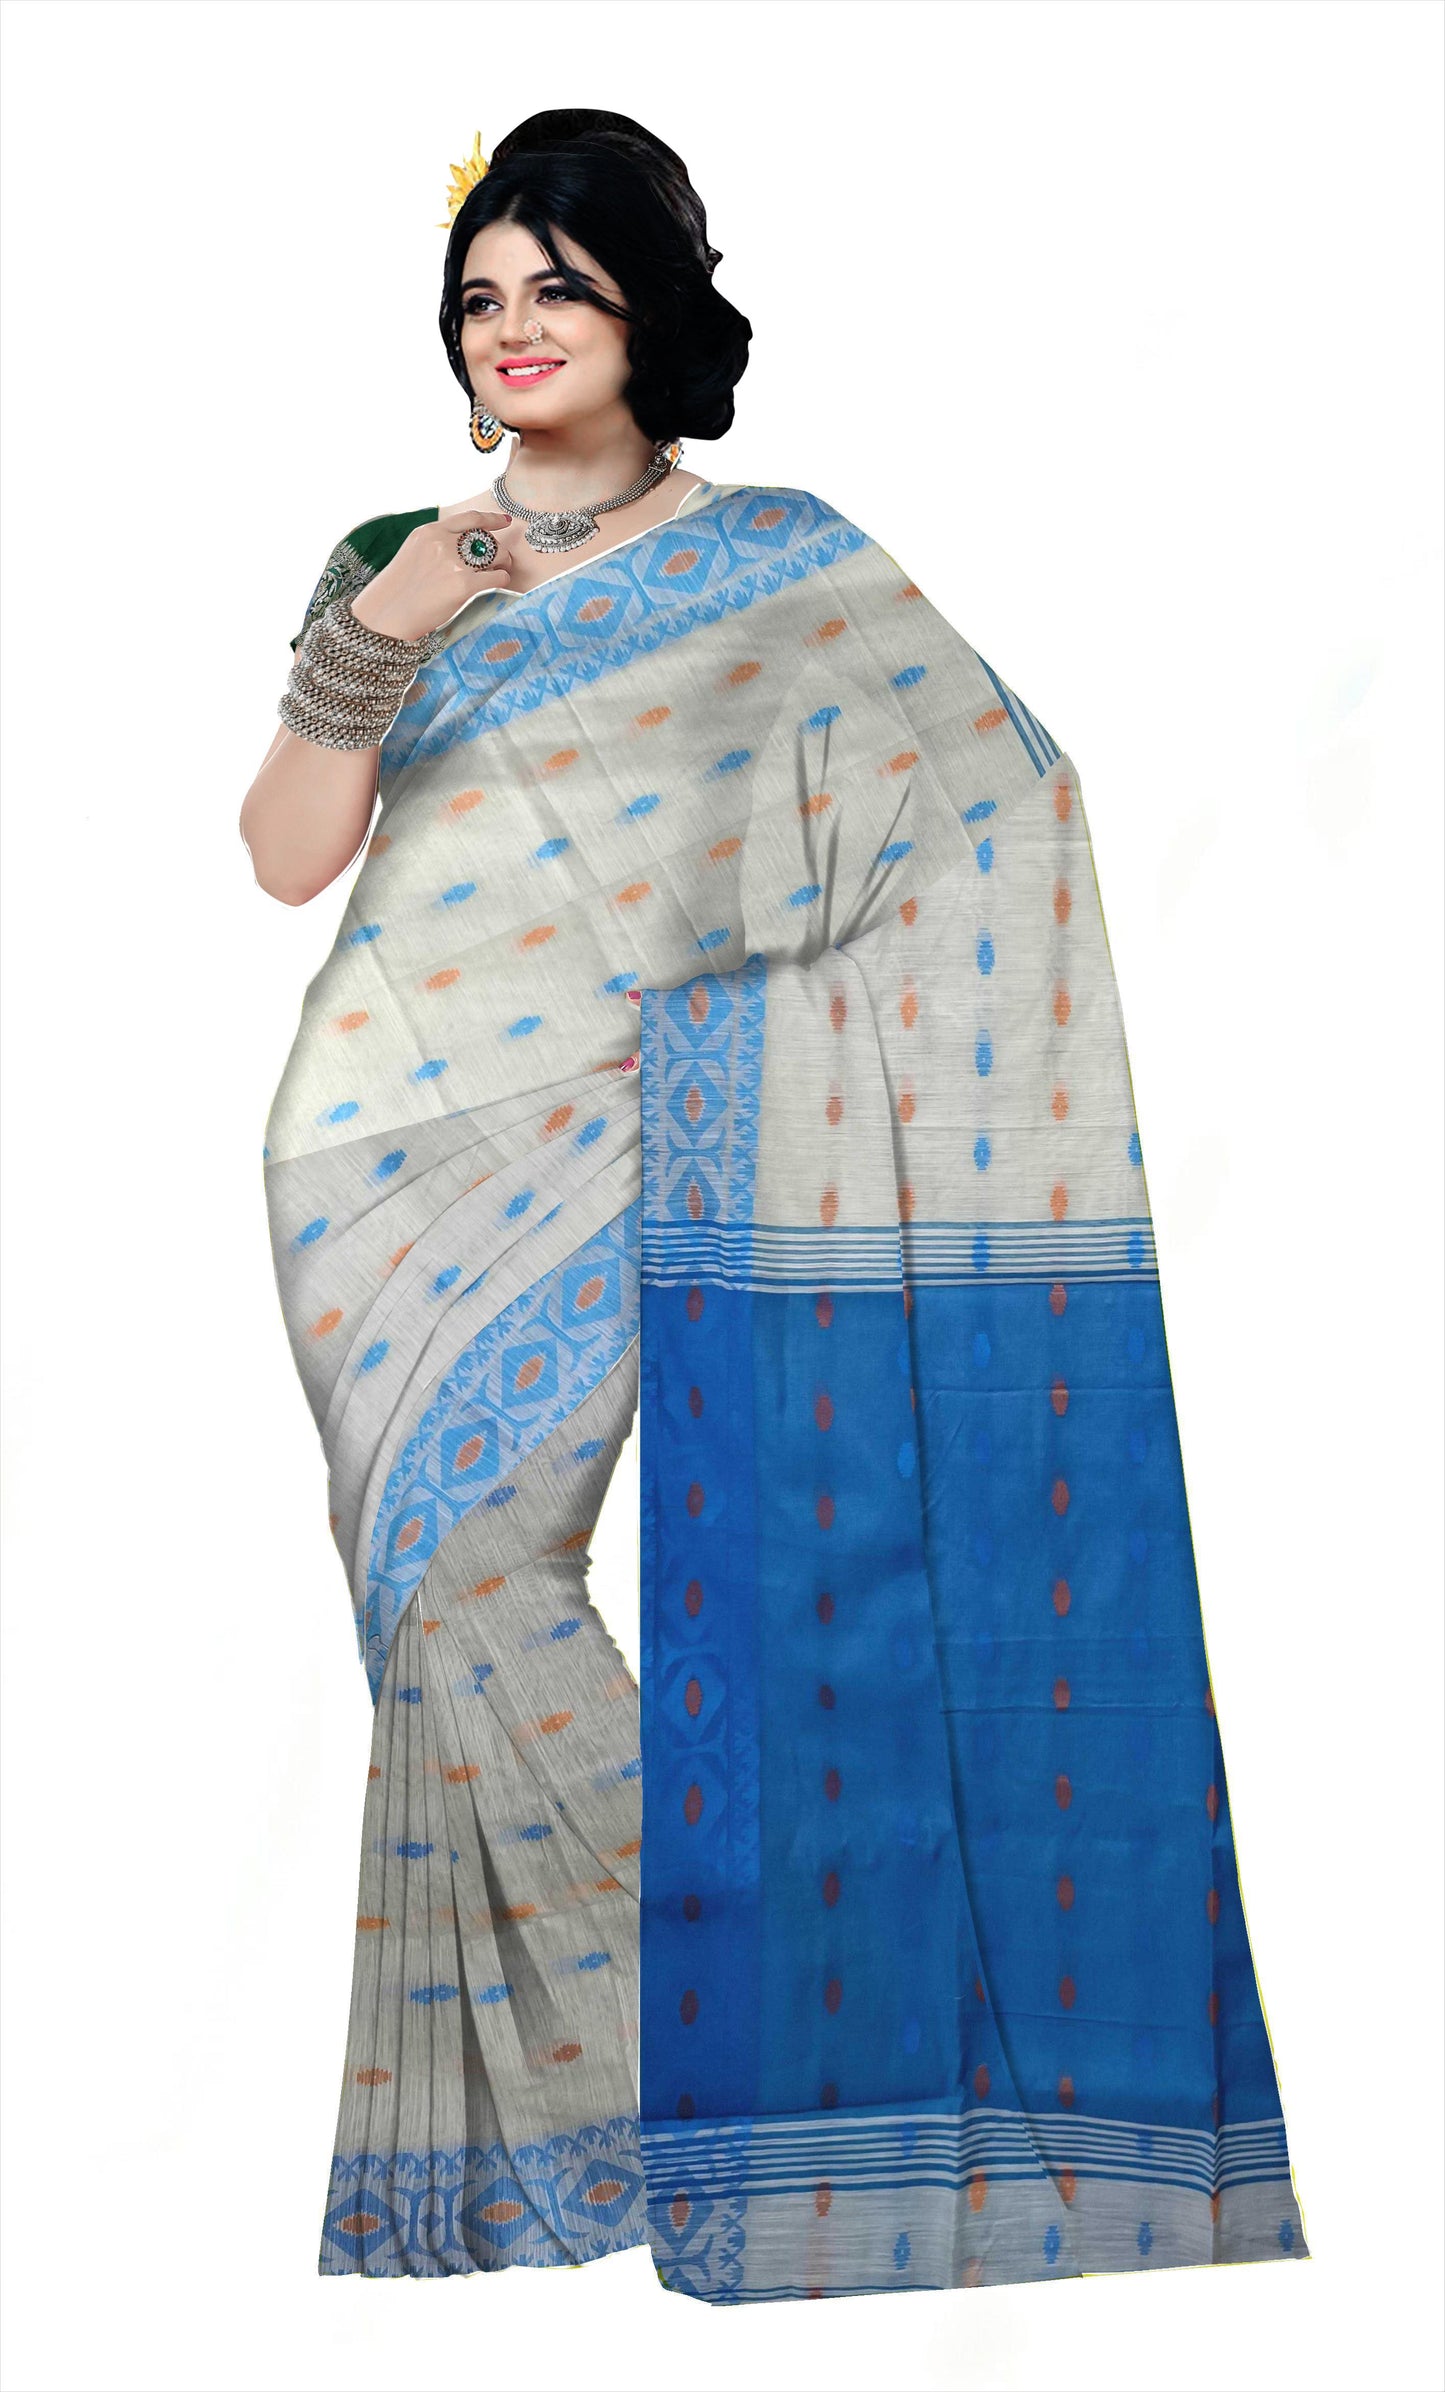 Pradip Fabrics Woman's 100% Khadi cotton Saree